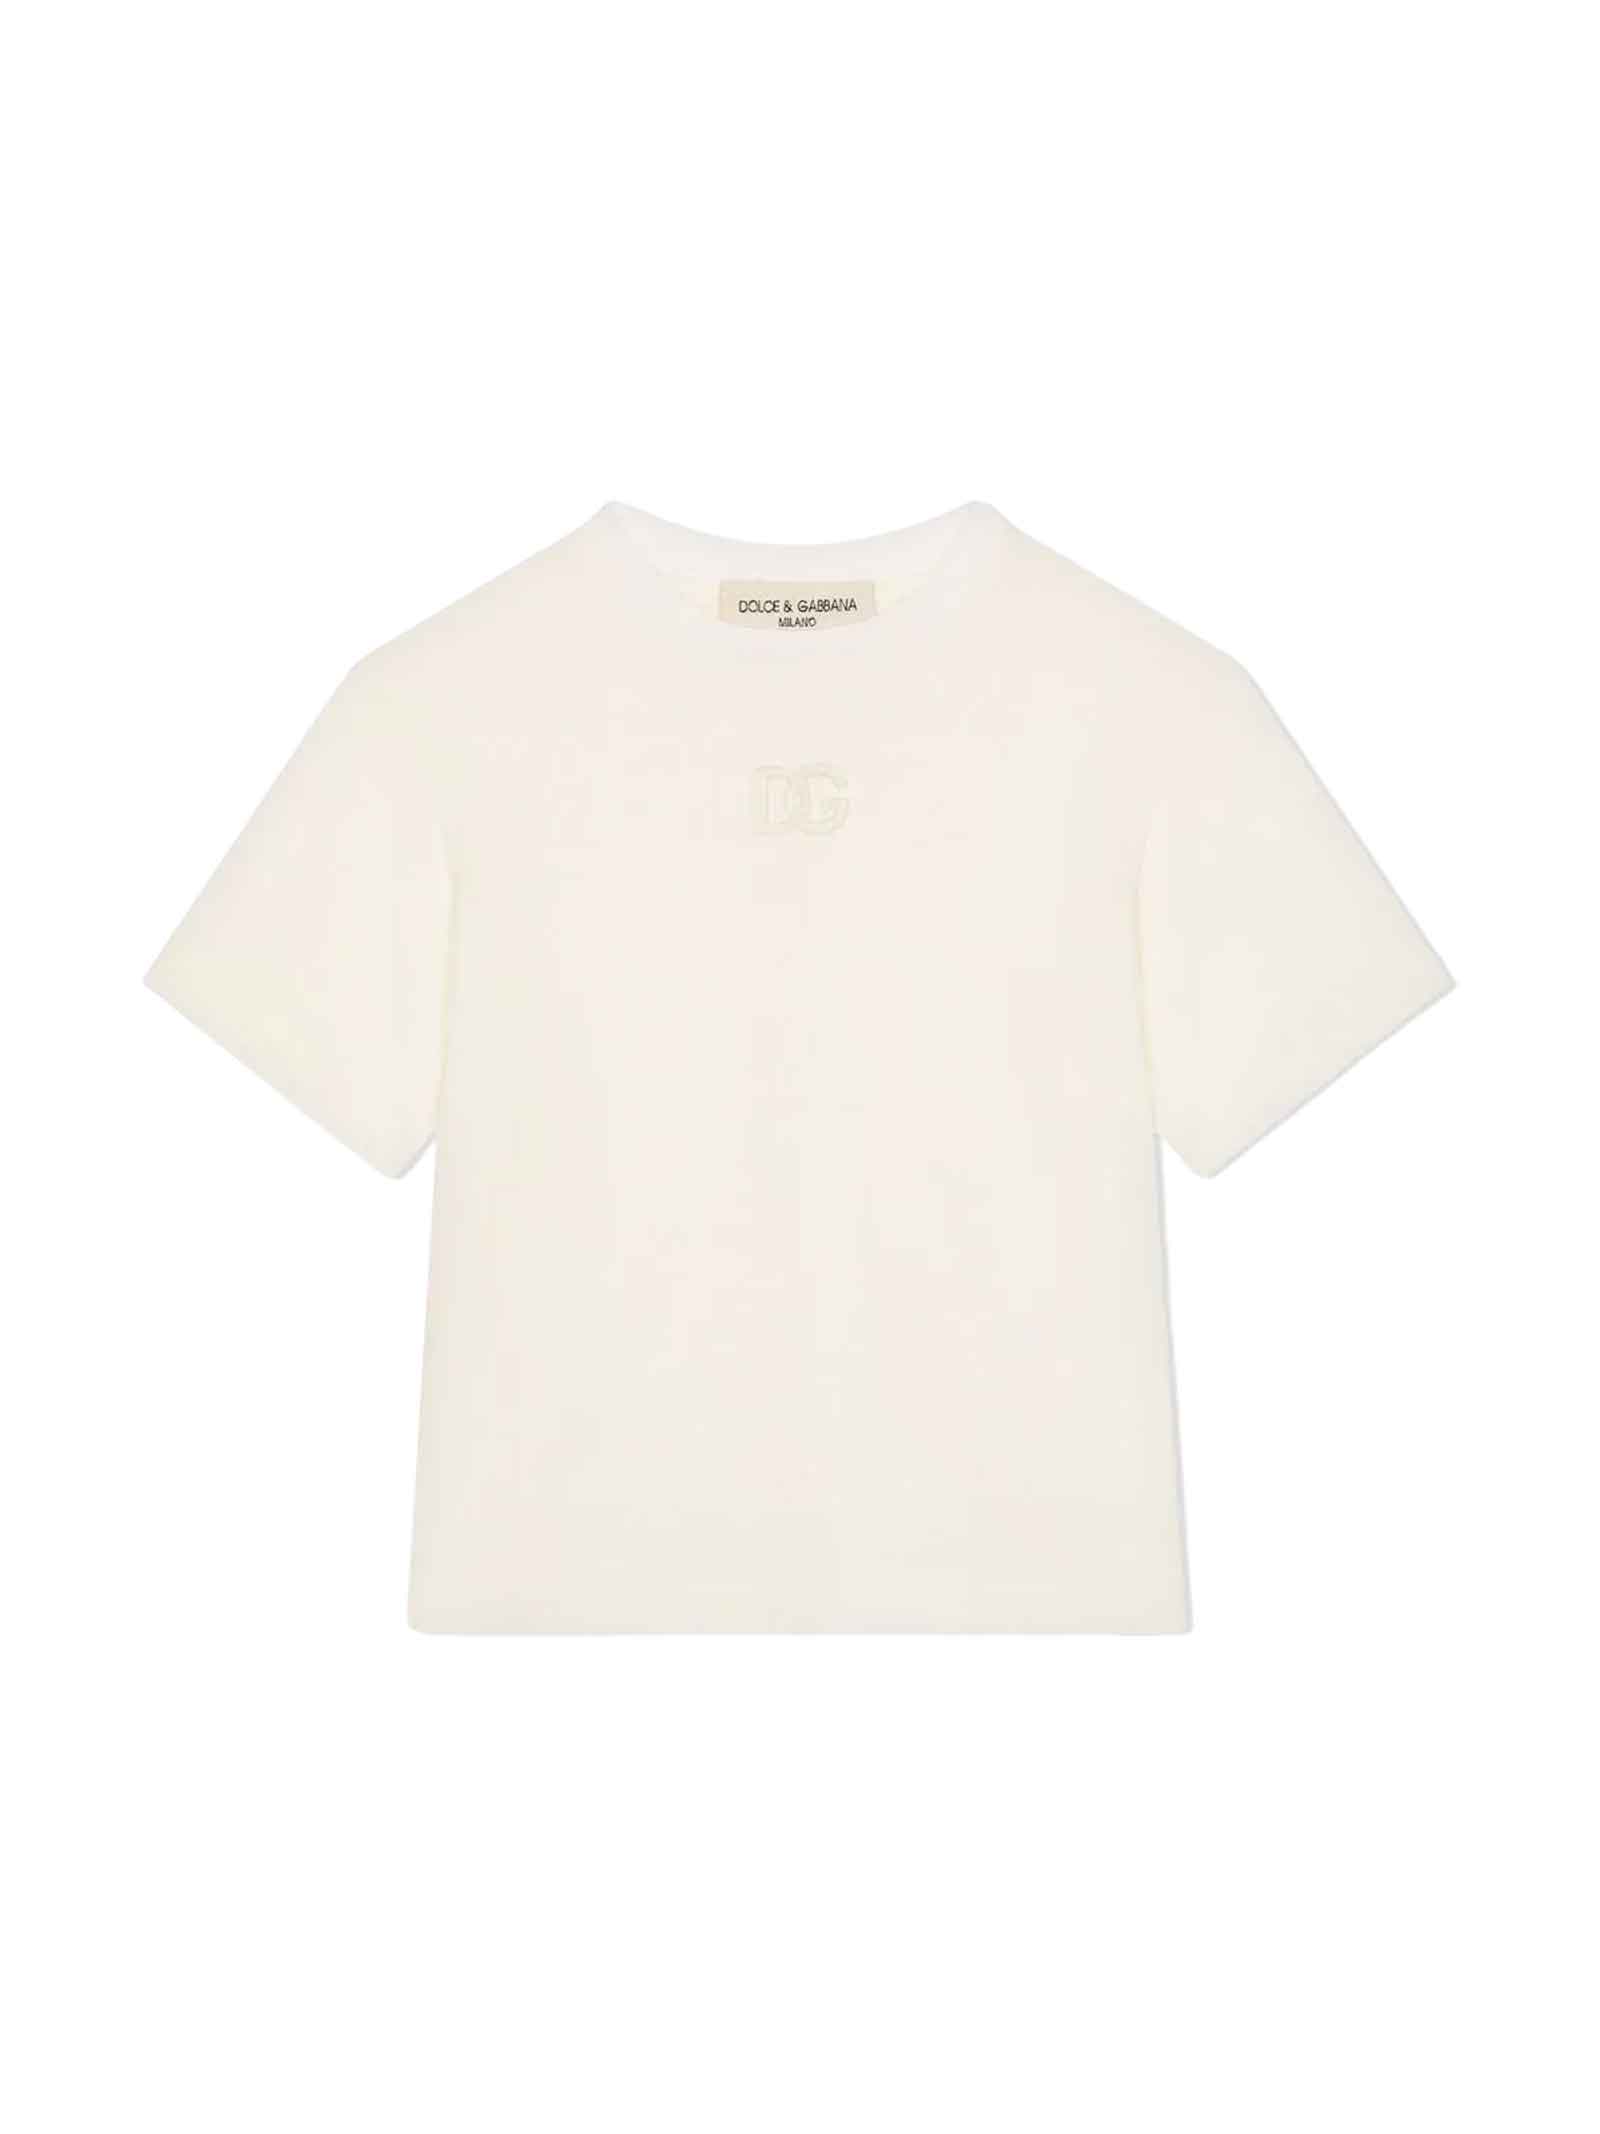 Dolce & Gabbana White T-shirt Boy